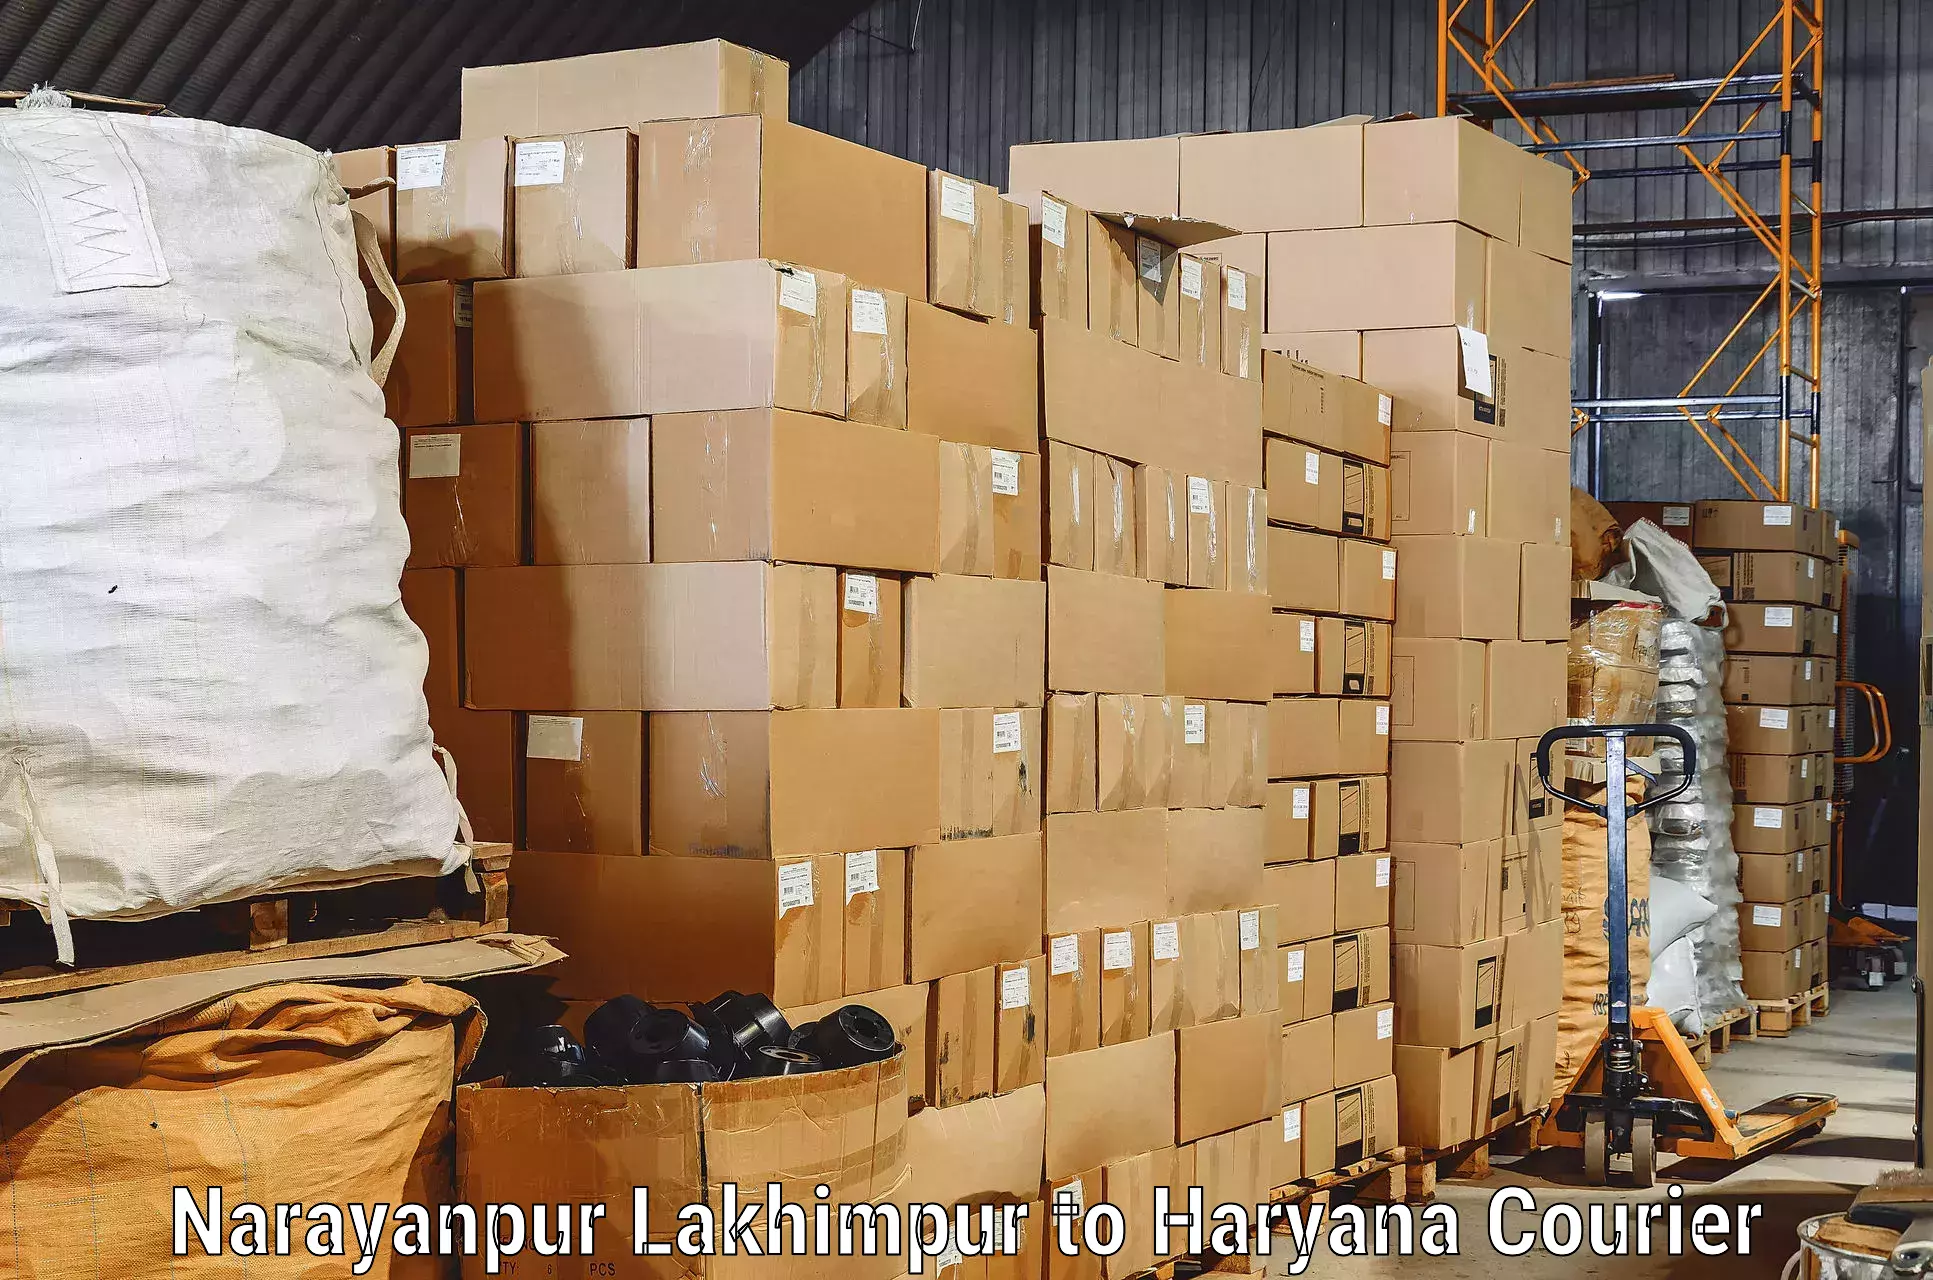 Furniture moving assistance Narayanpur Lakhimpur to Panipat